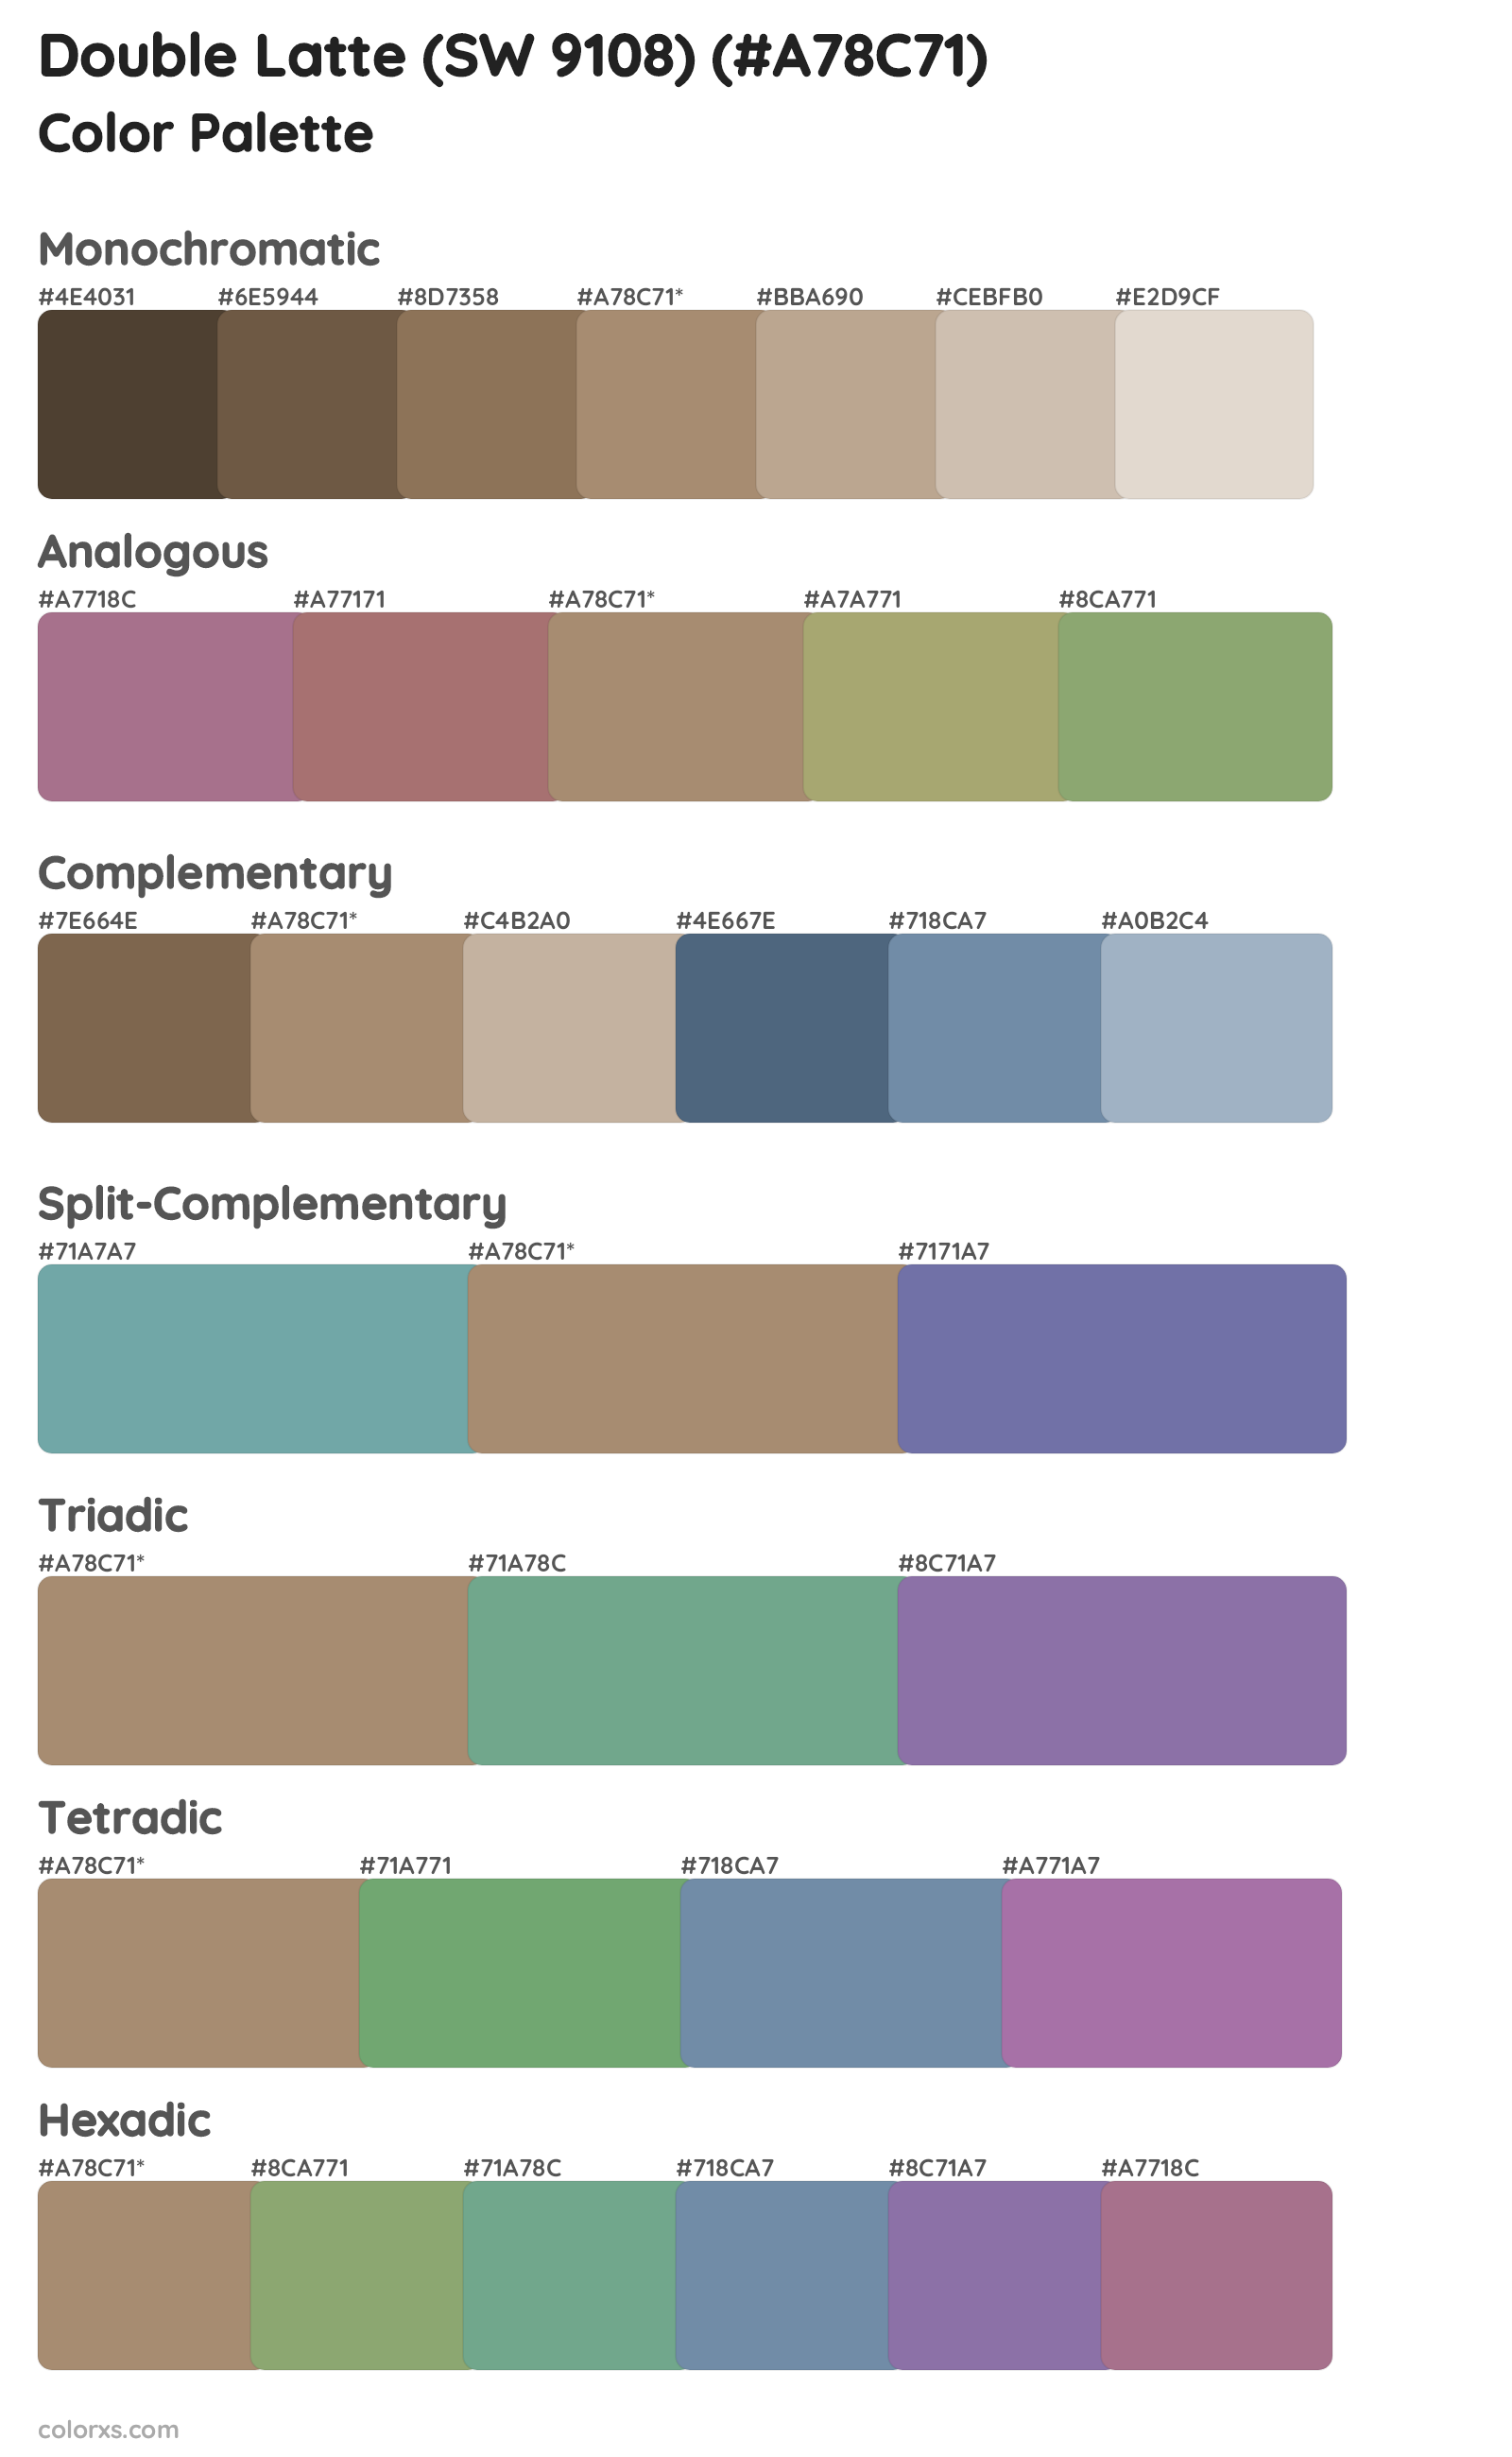 Double Latte (SW 9108) Color Scheme Palettes